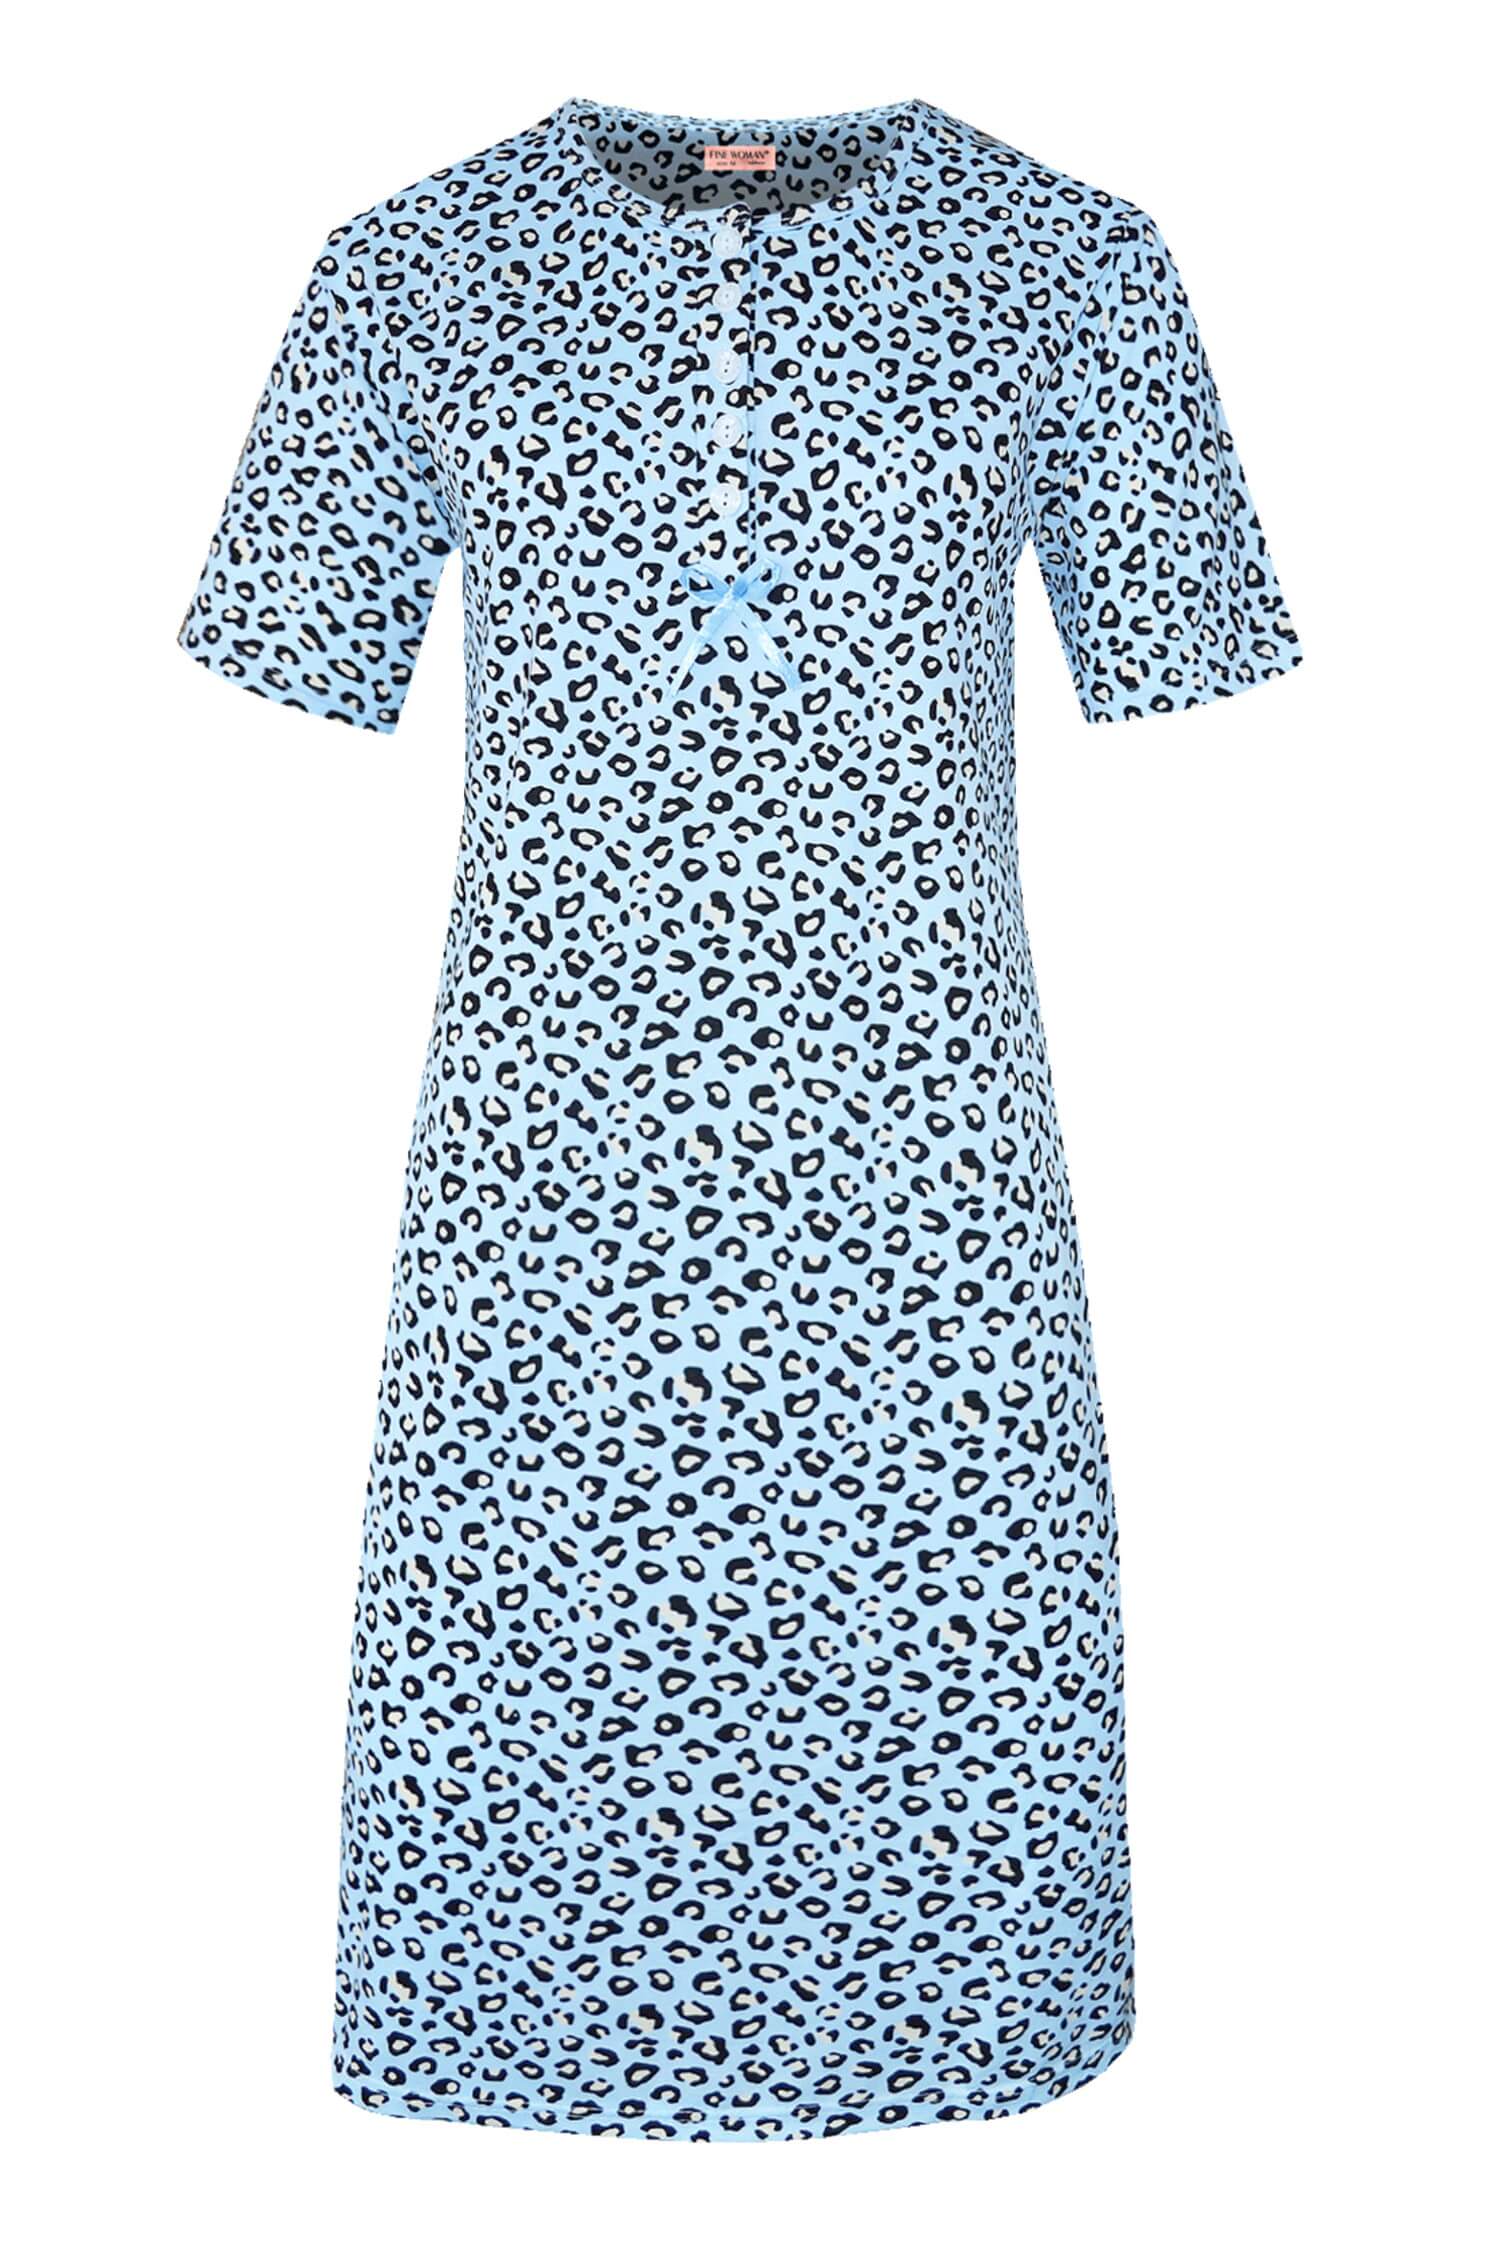 Katarina dámská noční košile leopardí vzor 6529 XL světle modrá